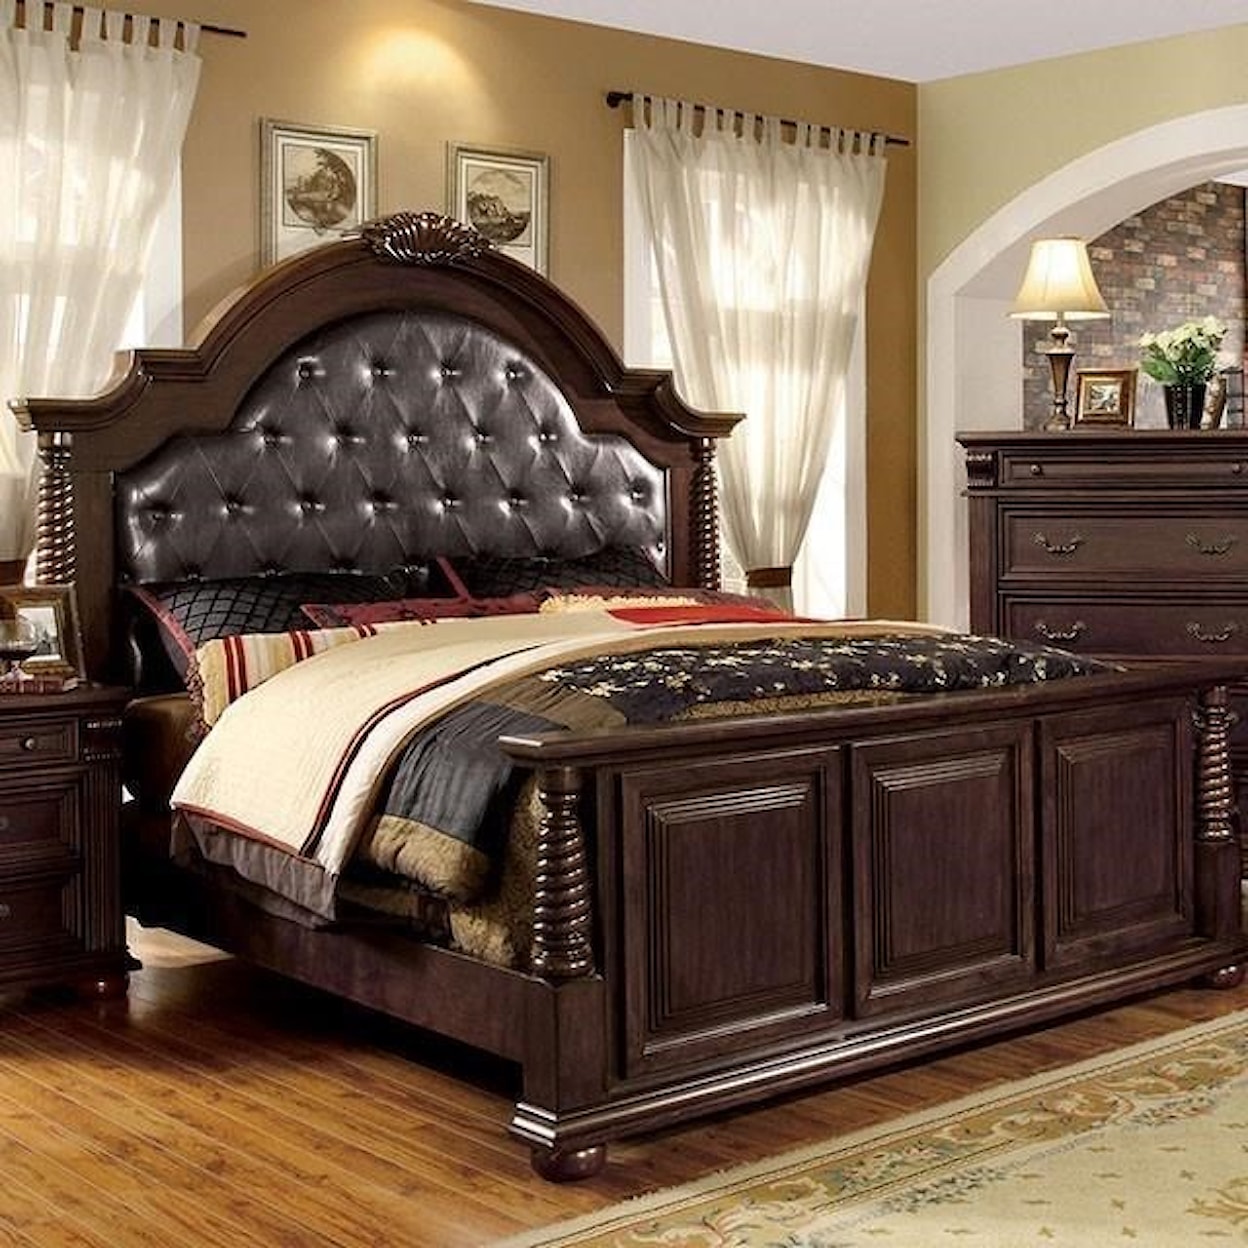 Furniture of America Esperia King Bed